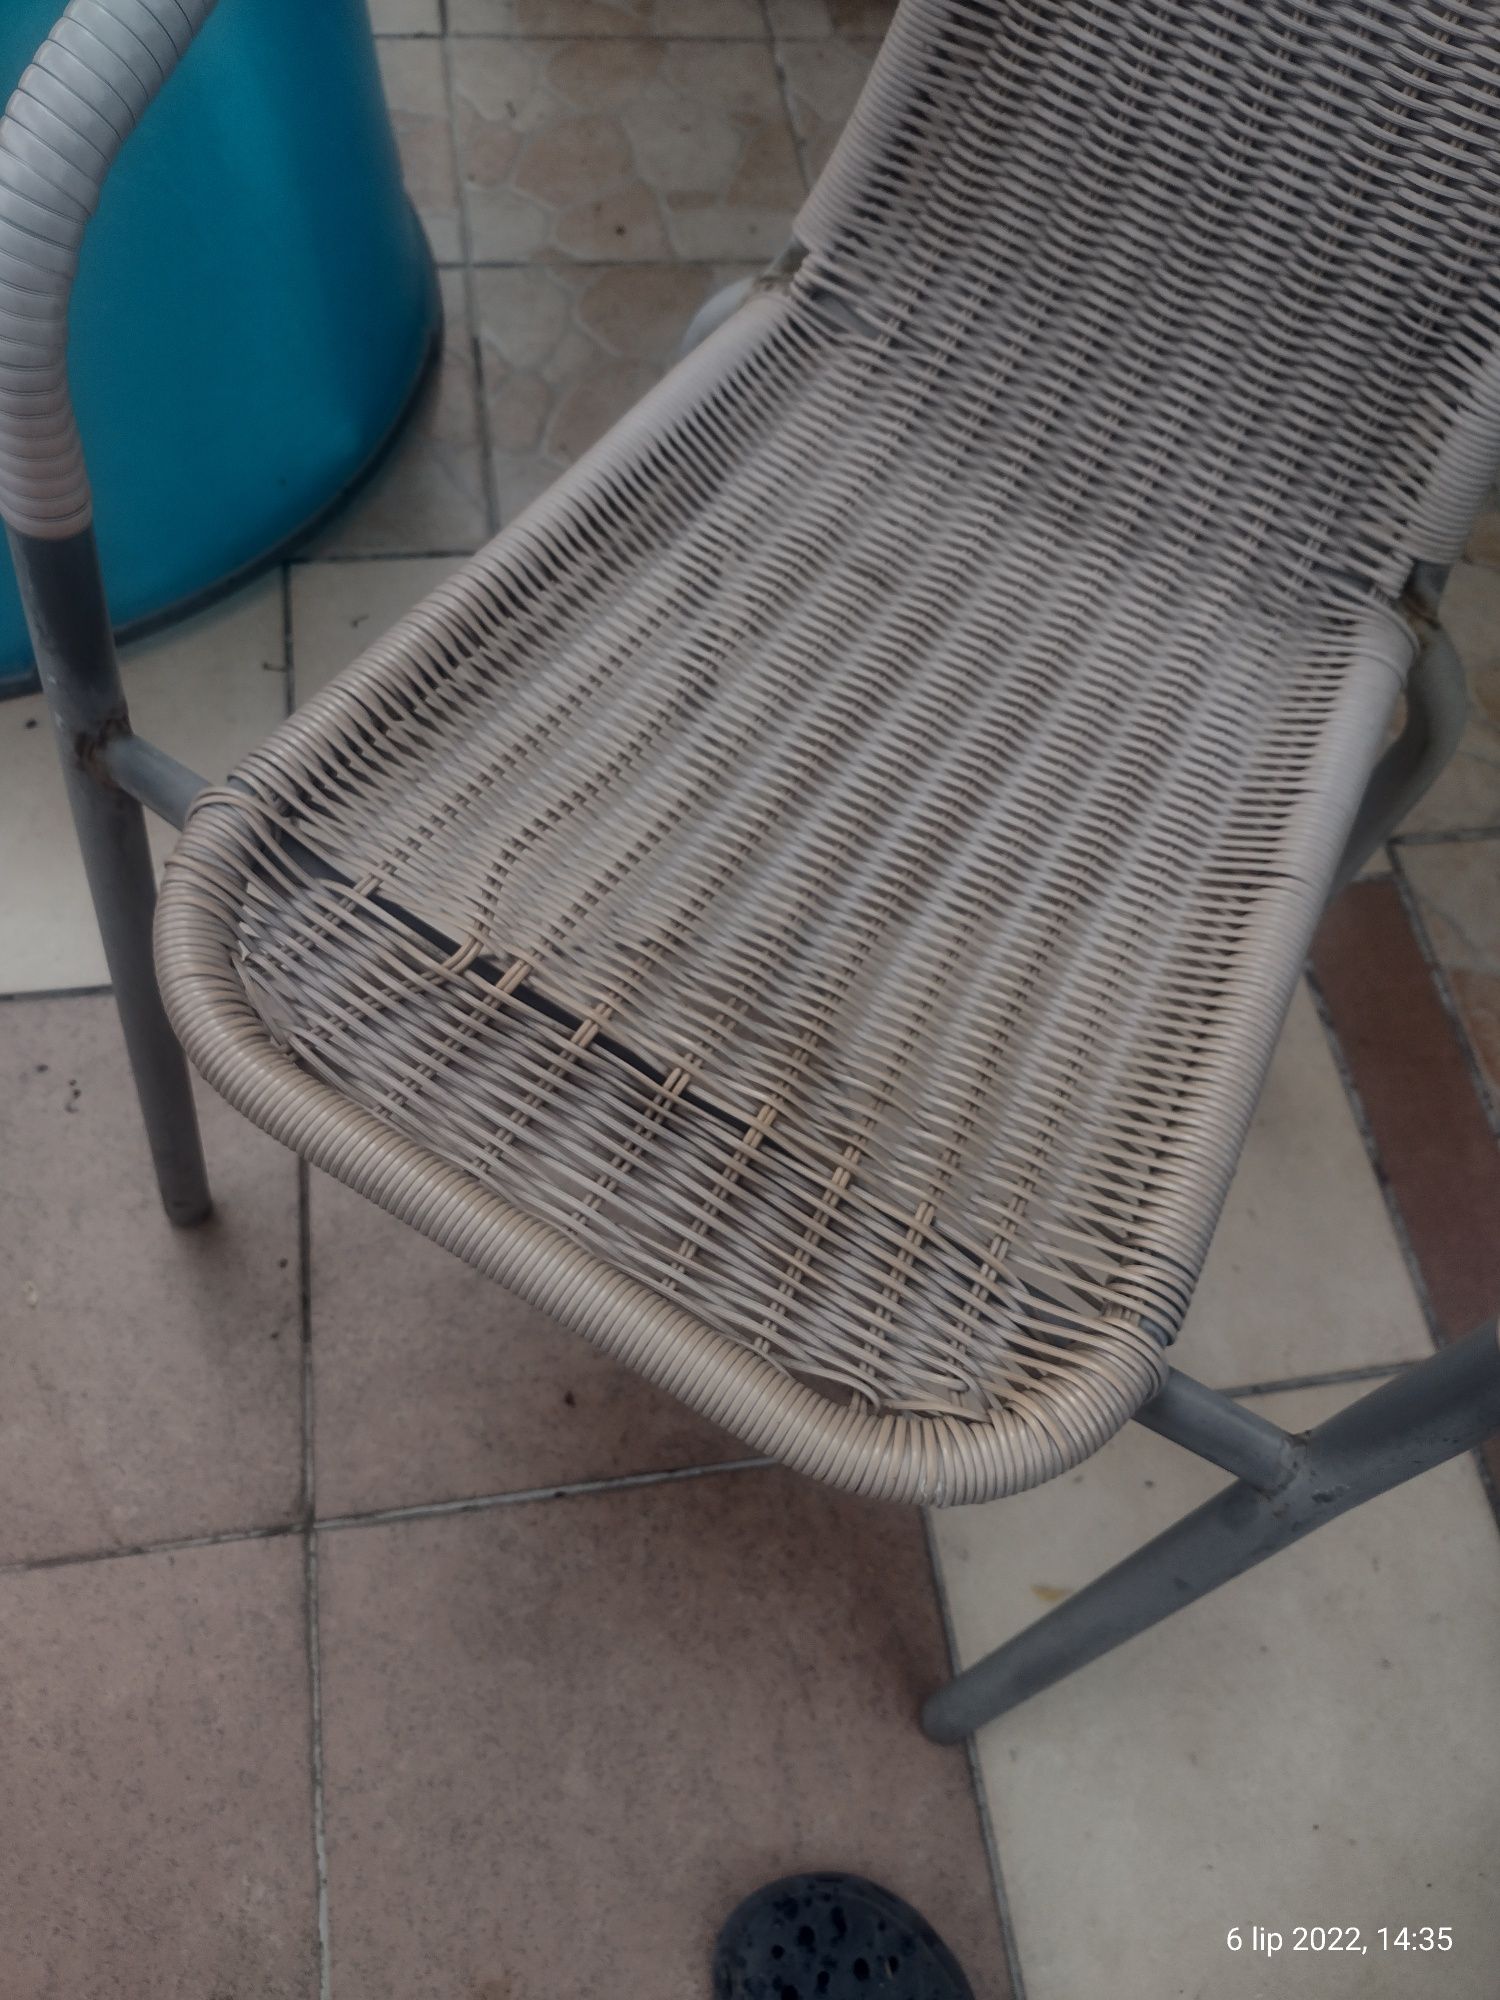 Krzesło ogrodowe